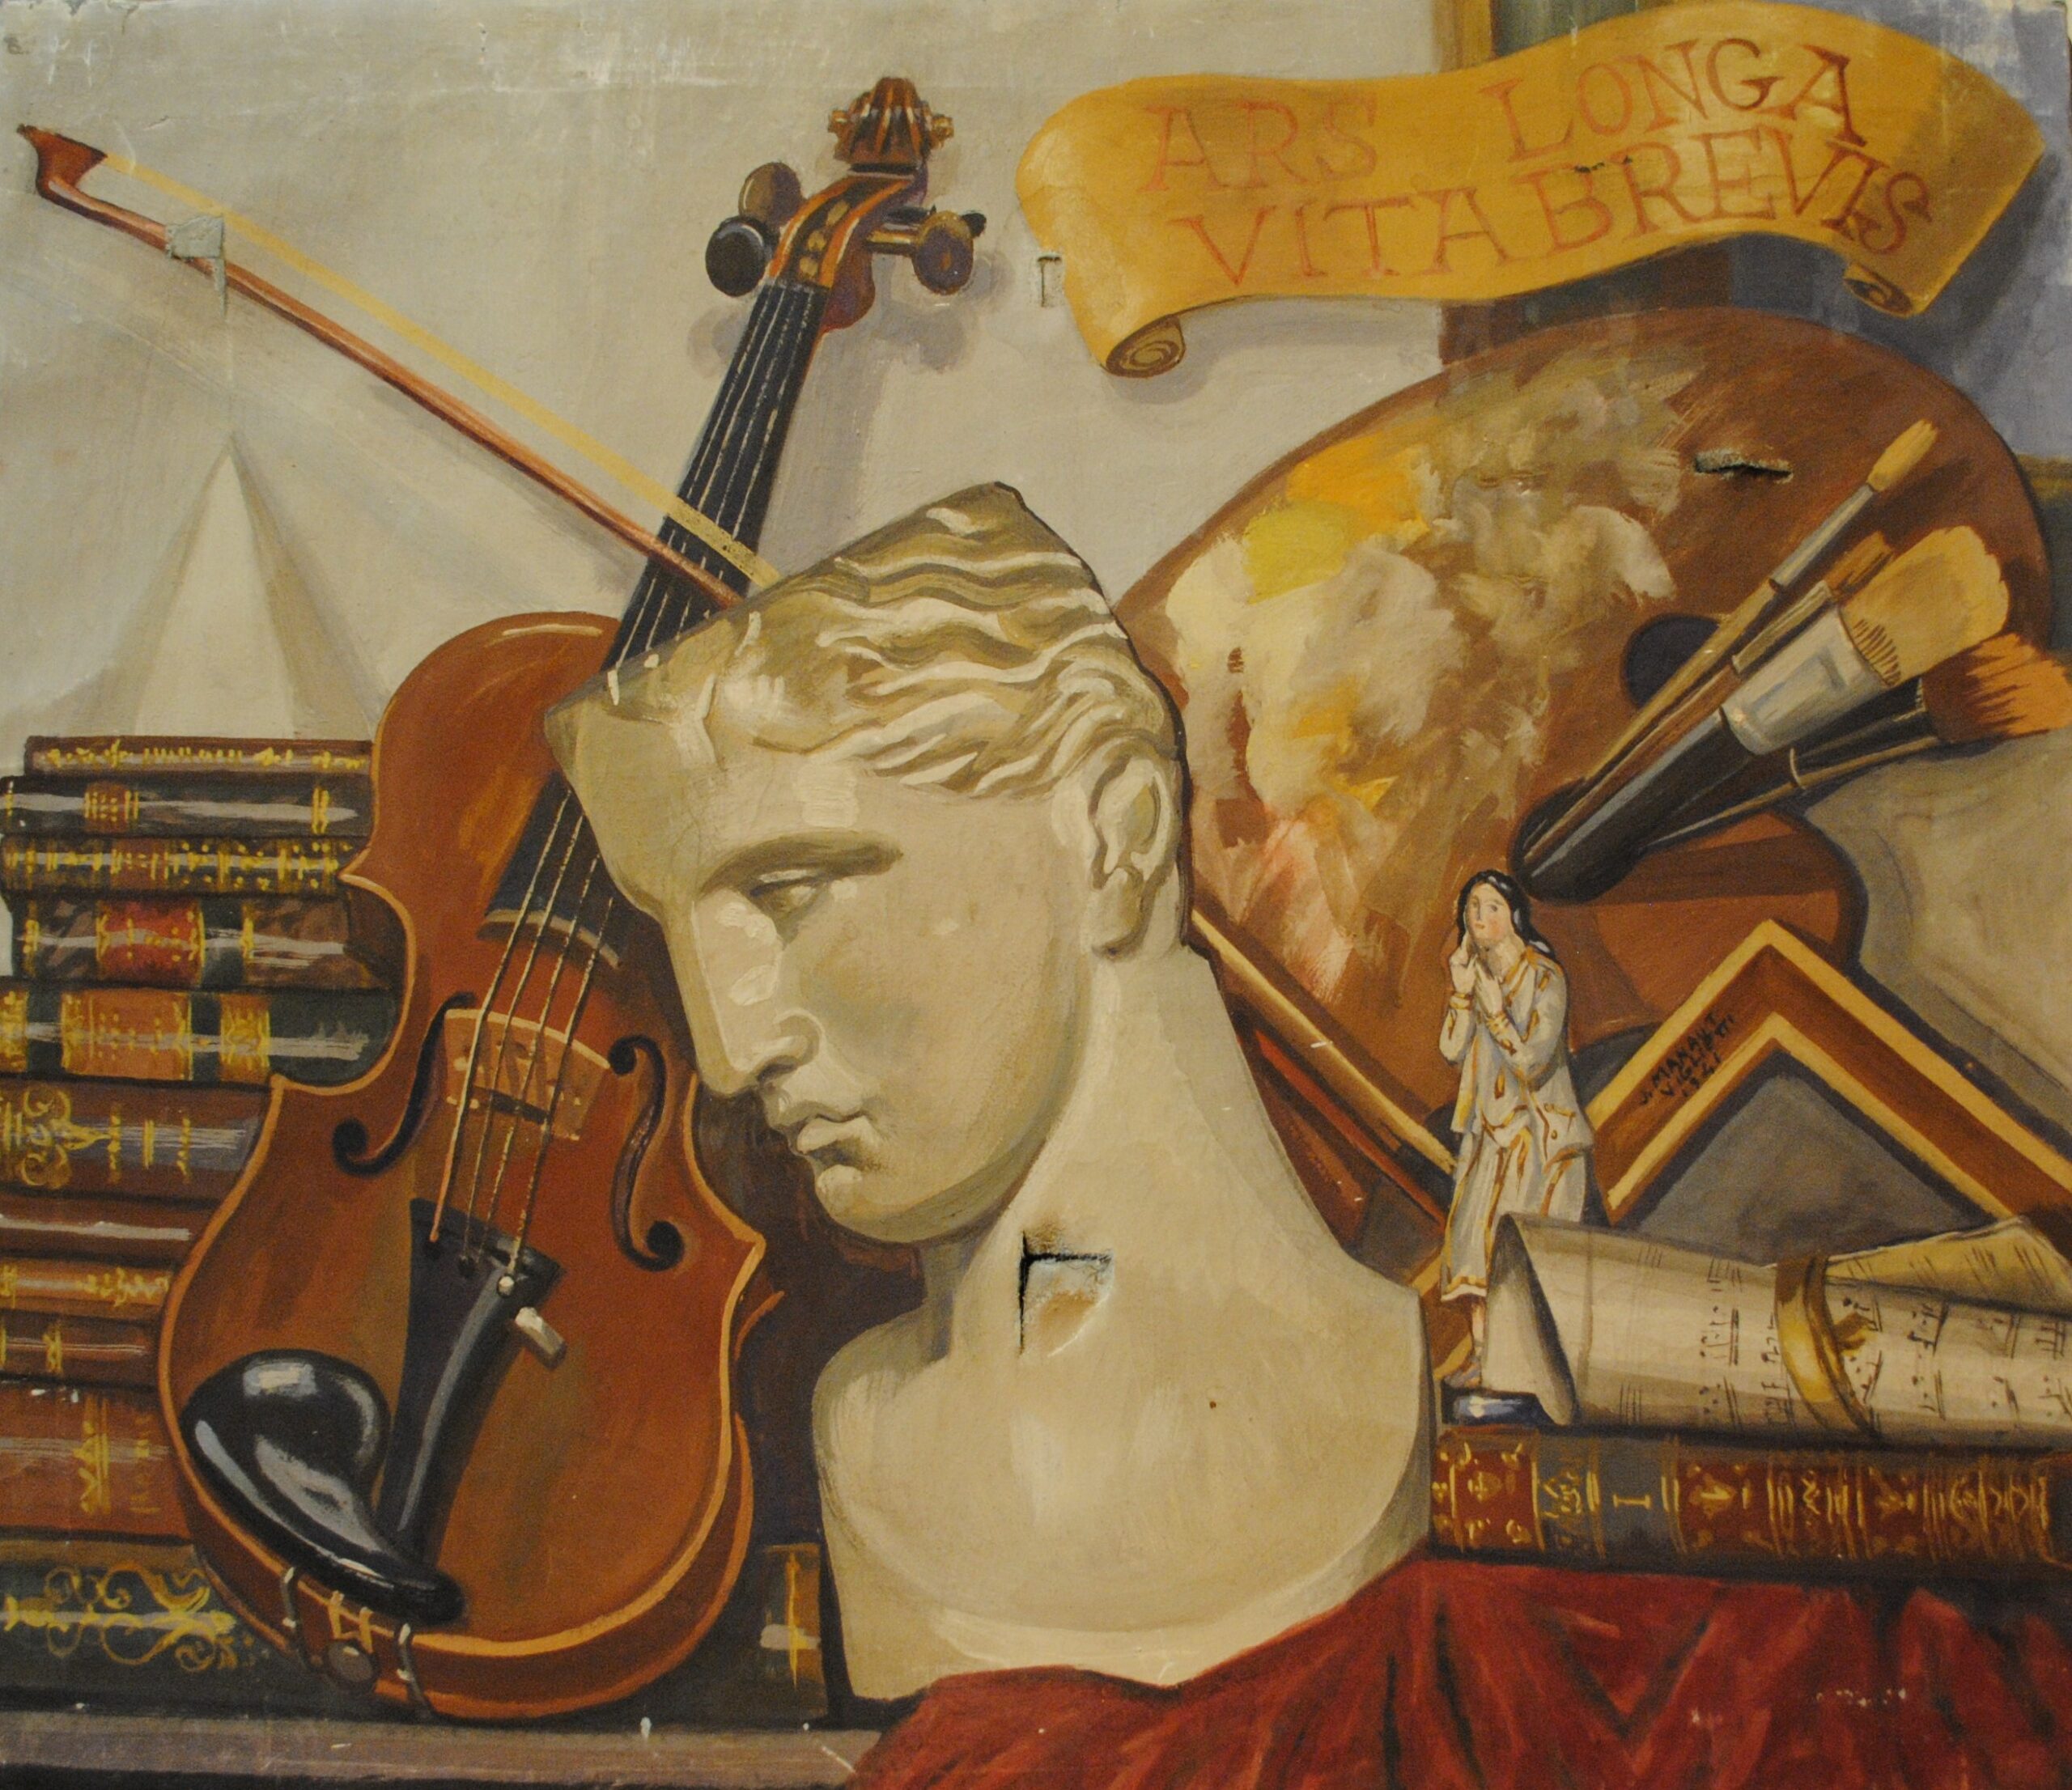 Pintura de José Manaut titulada Alegoría a las artes, 1941. Óleo sobre lienzo.